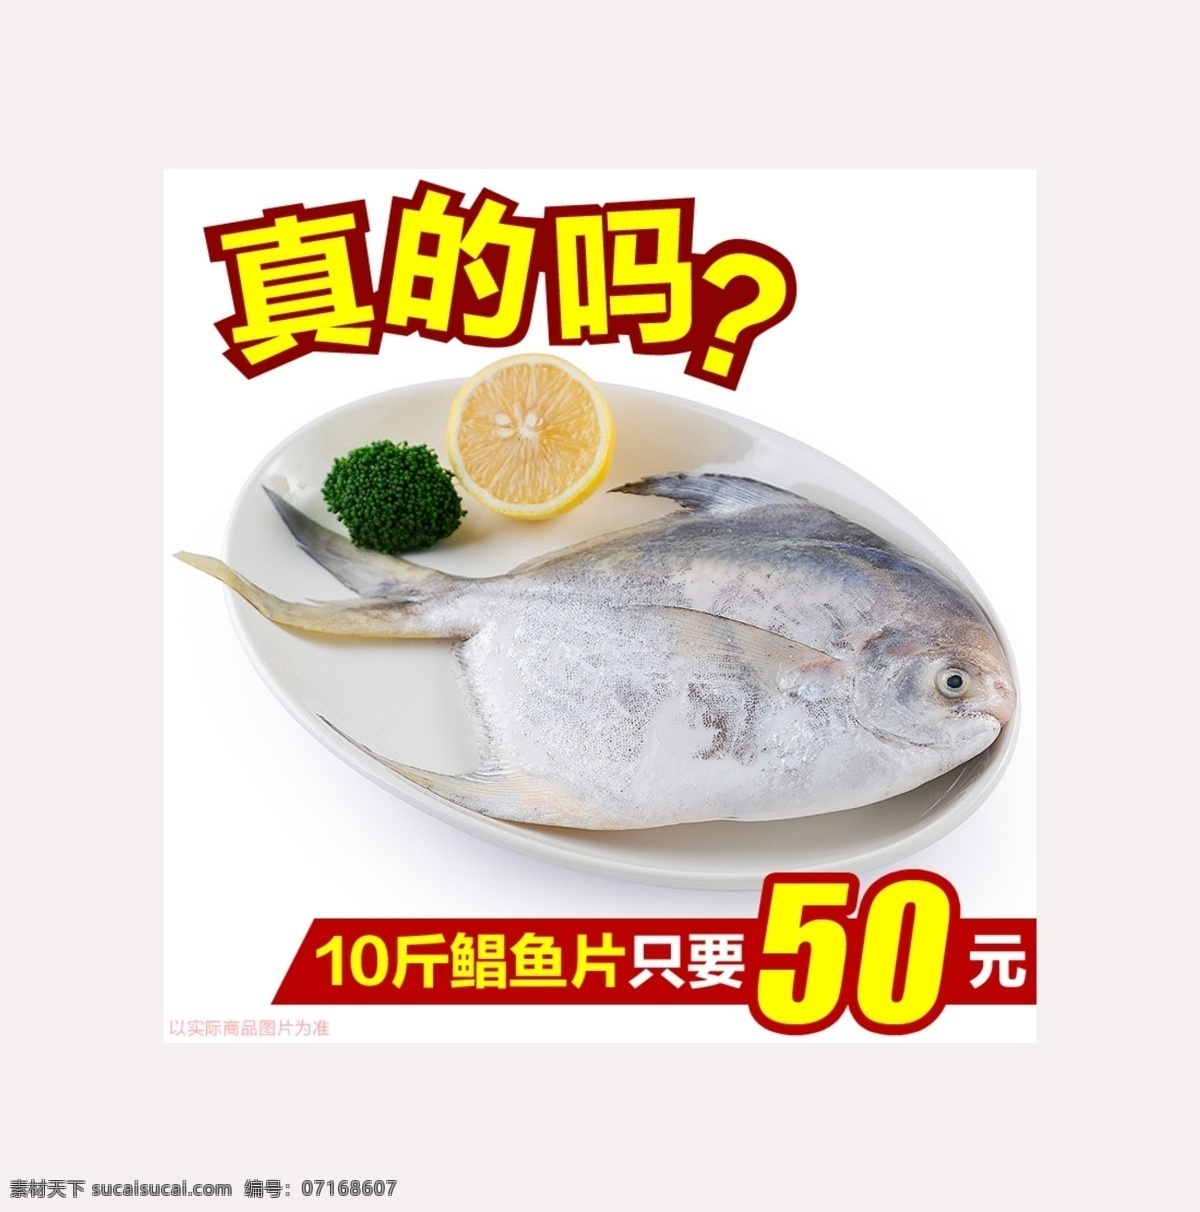 鲳鱼直通车 鲳鱼 直通车 淘宝 海鲜 美味 水产品 淘宝界面设计 促销标签